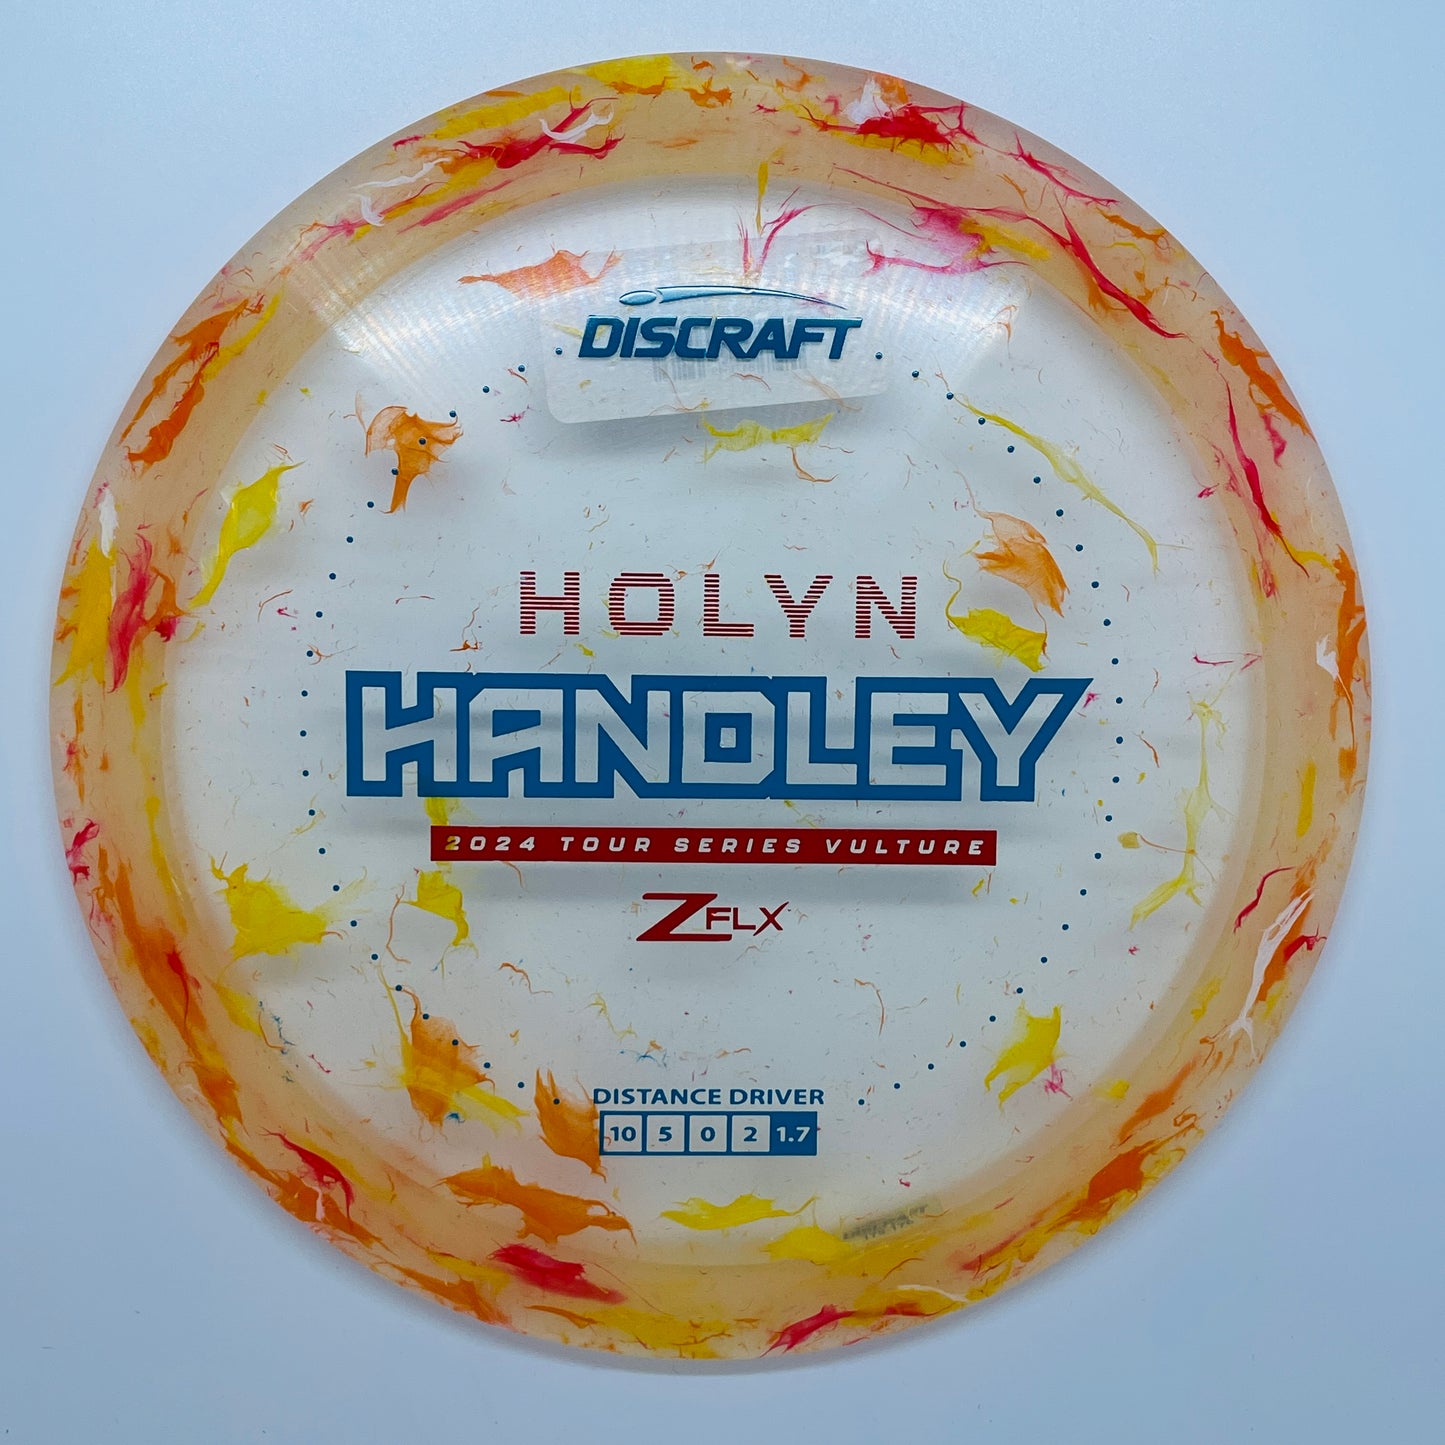 Discraft Vulture Jawbreaker Z-Flex Holyn Handley Tour Series 2024 - Distance Driver